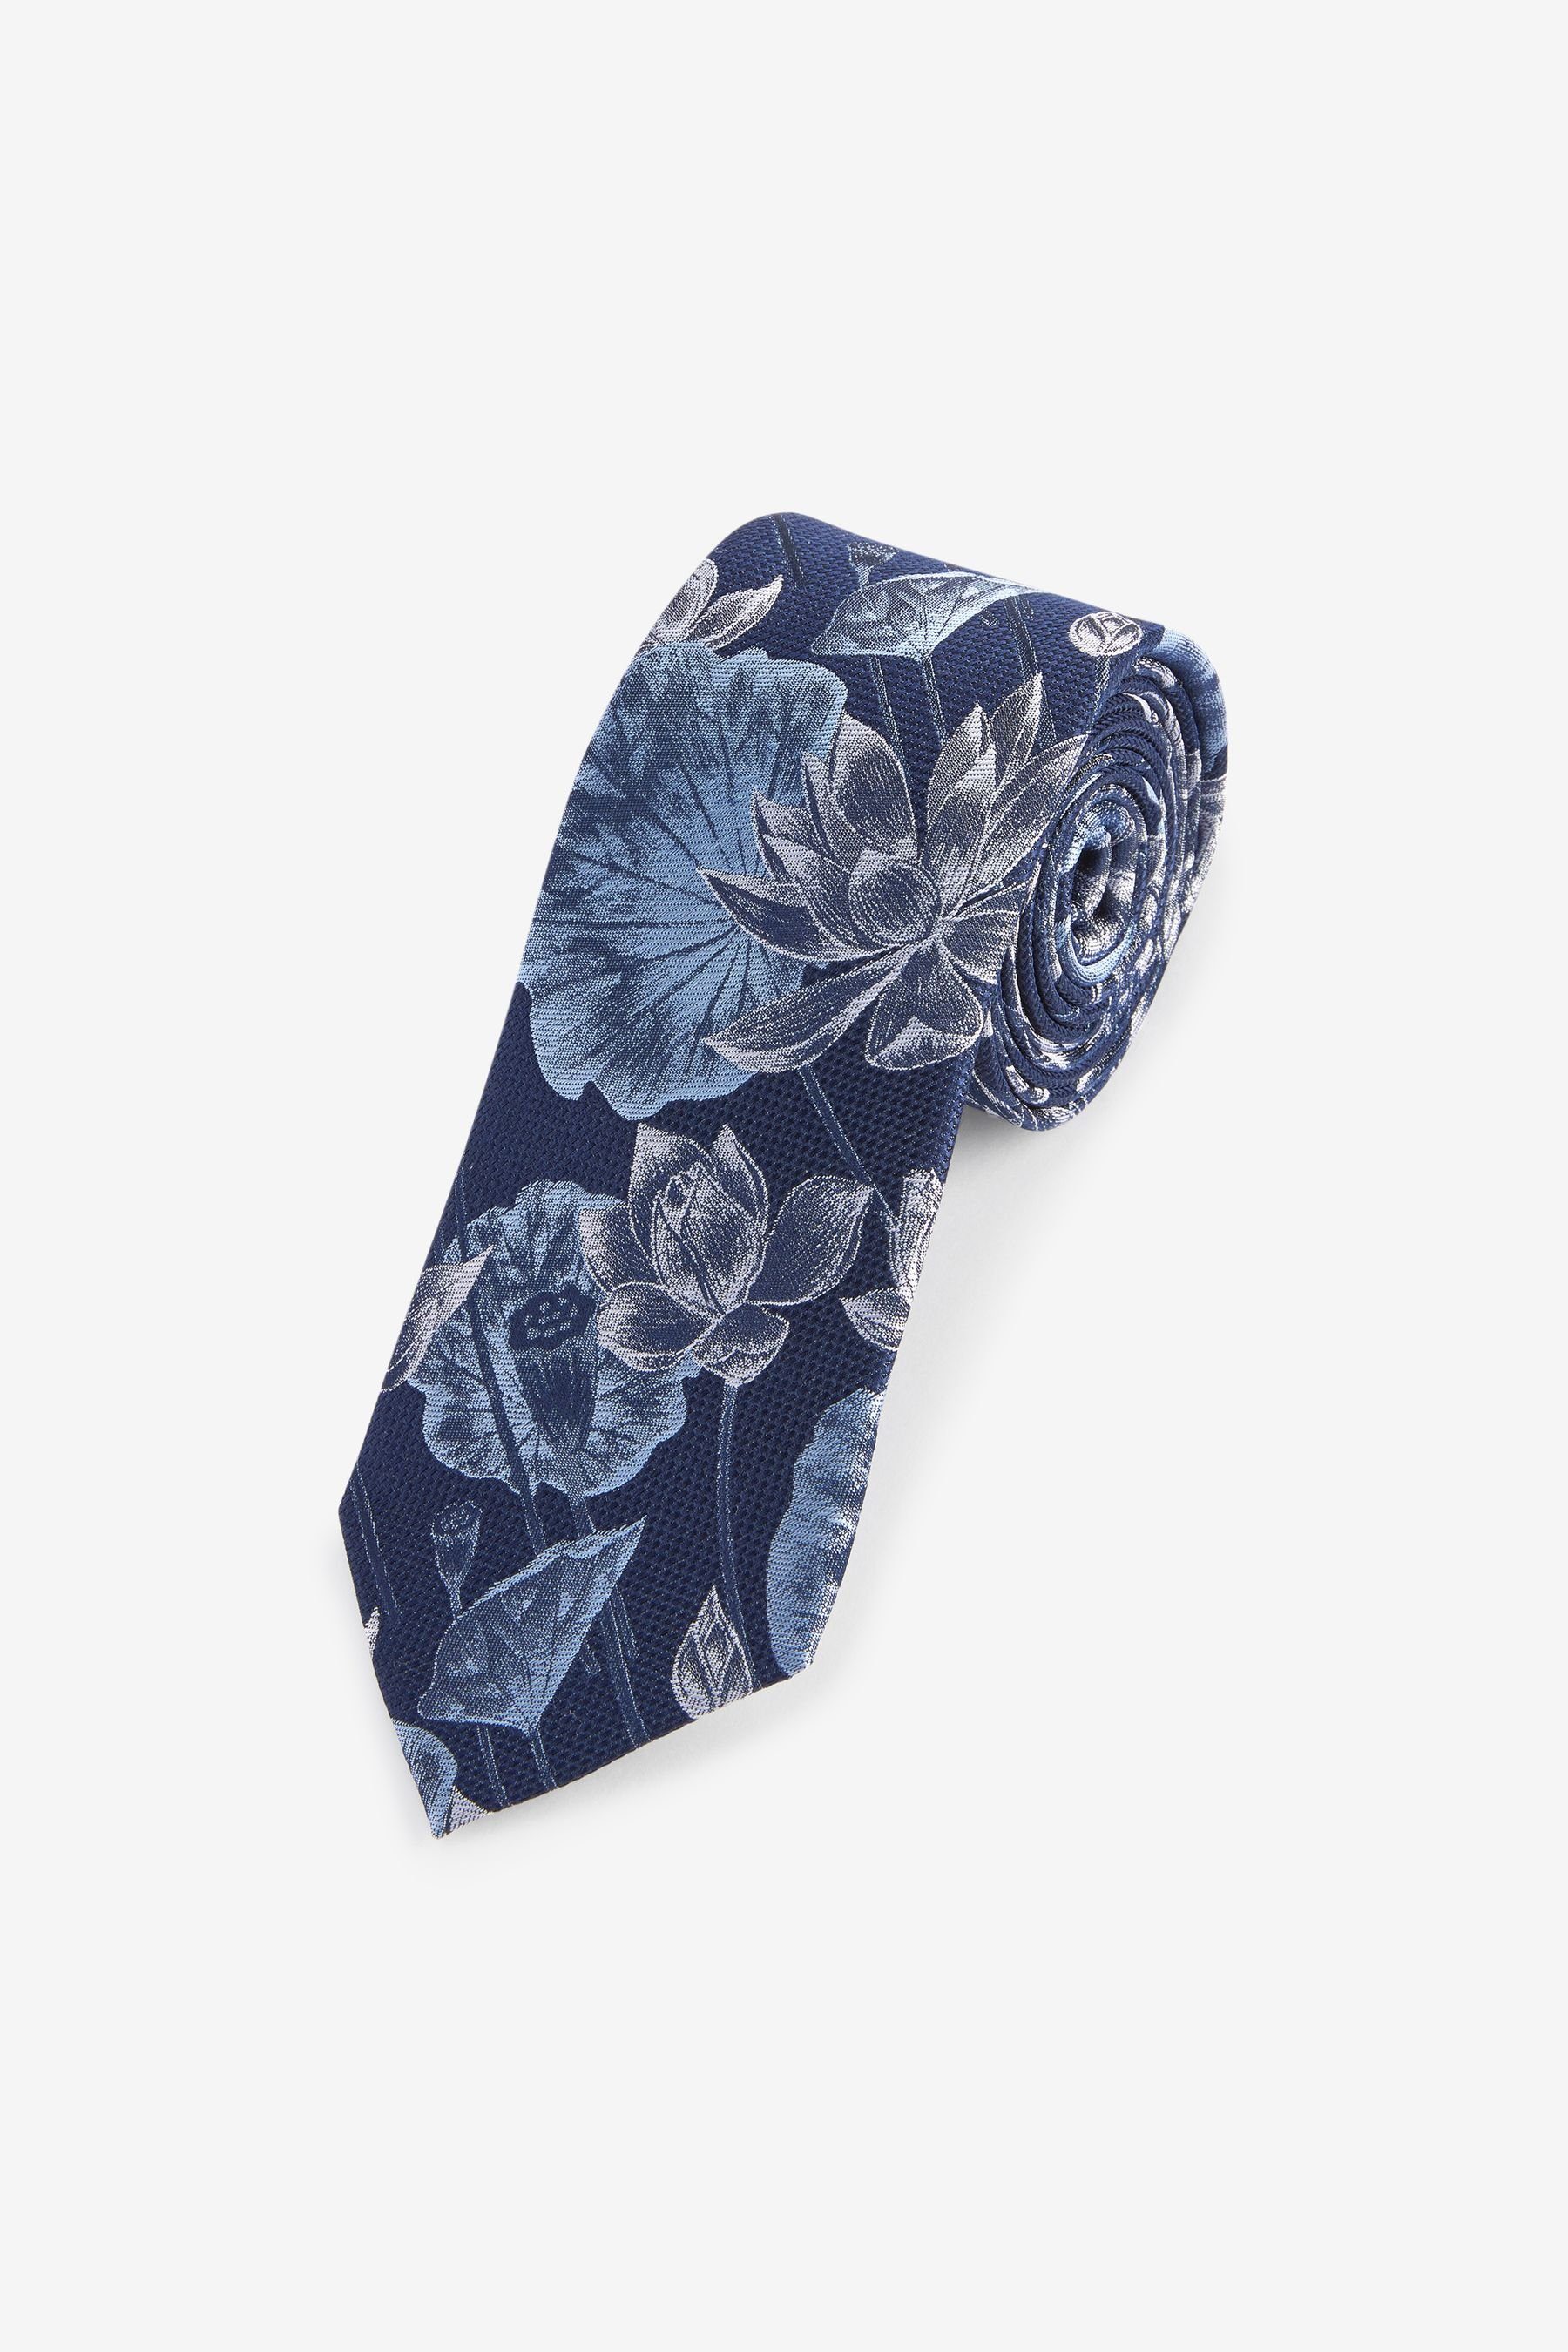 Next Krawatte Seidenkrawatte mit Blumenmuster, breit (1-St)